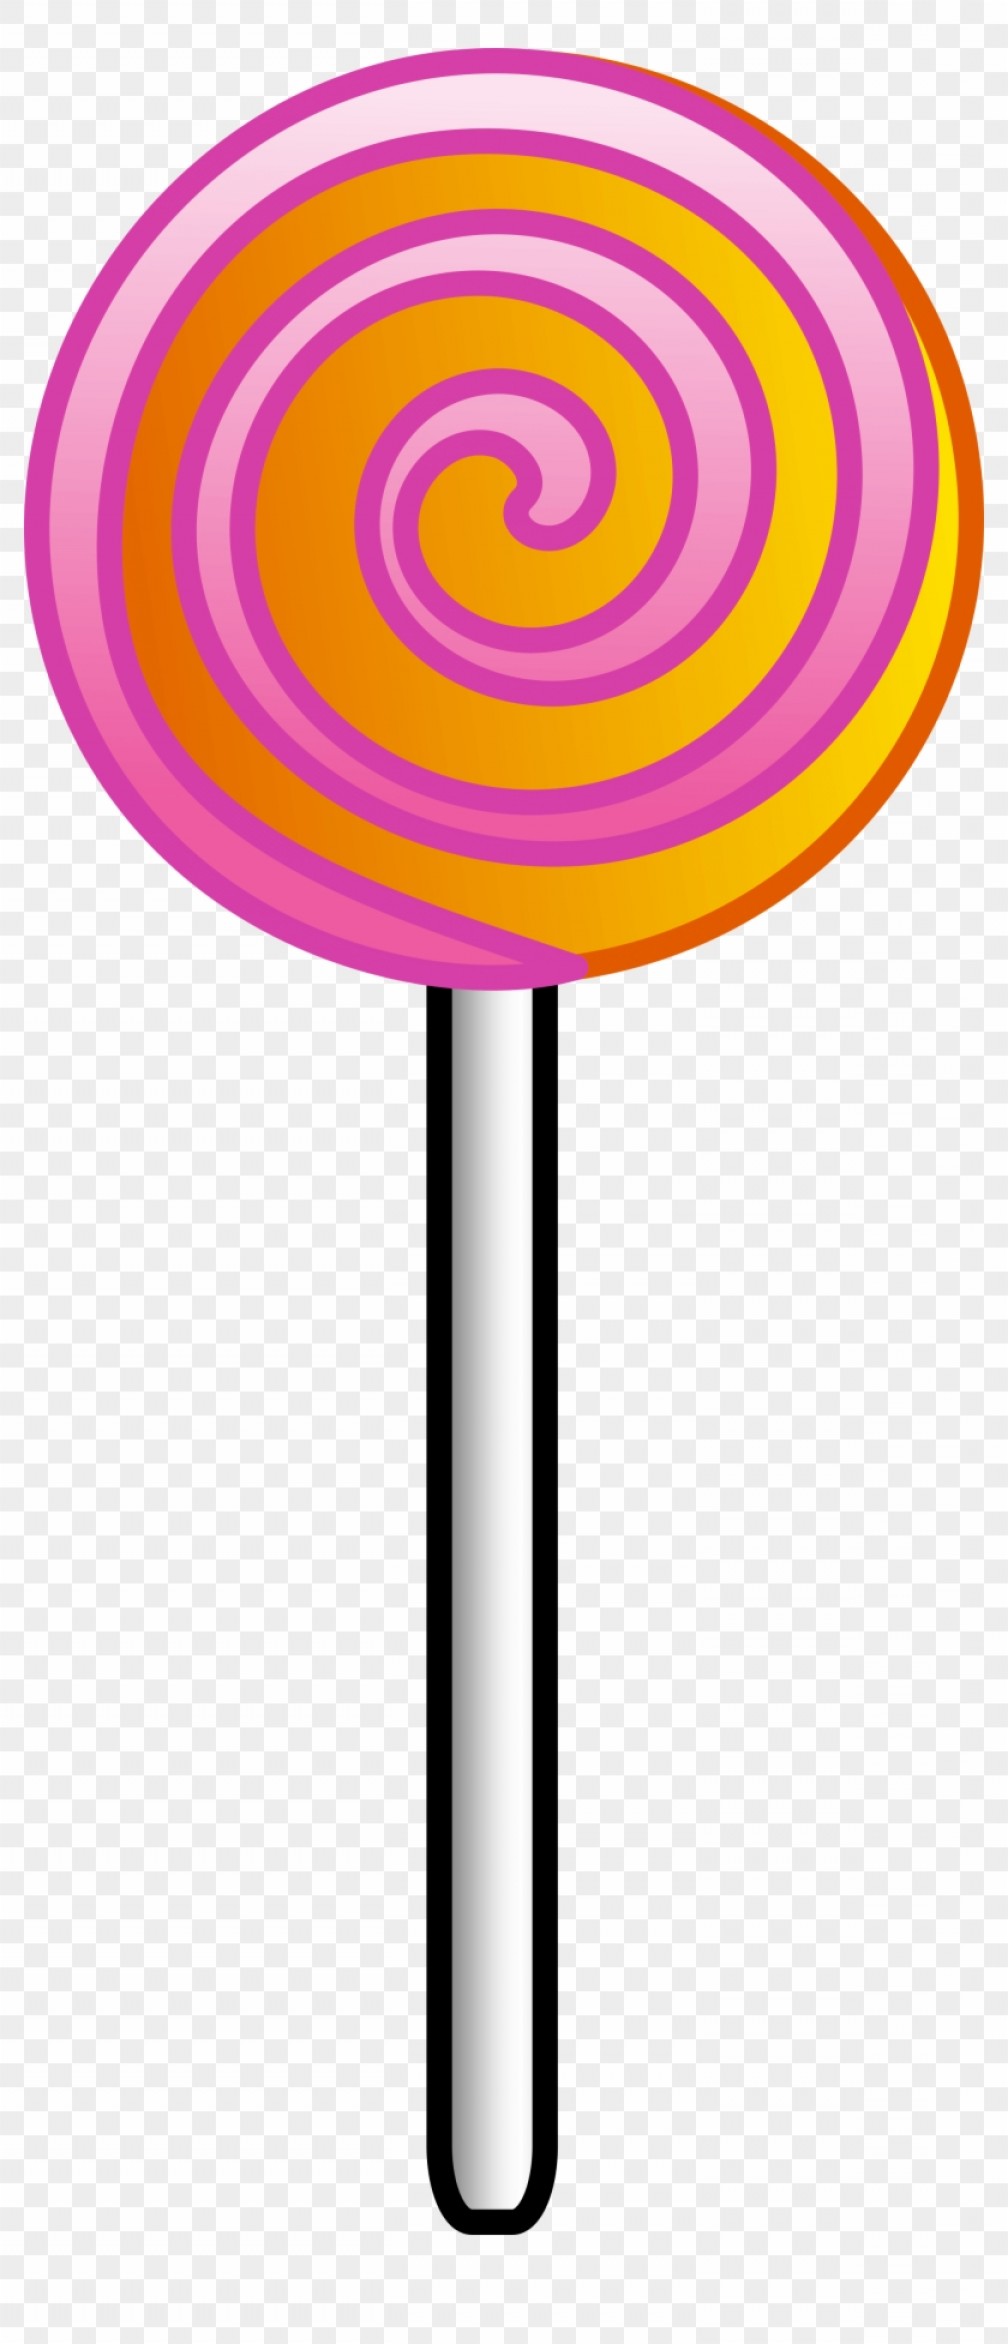 Miabbdnmcandies suckers lollipops.